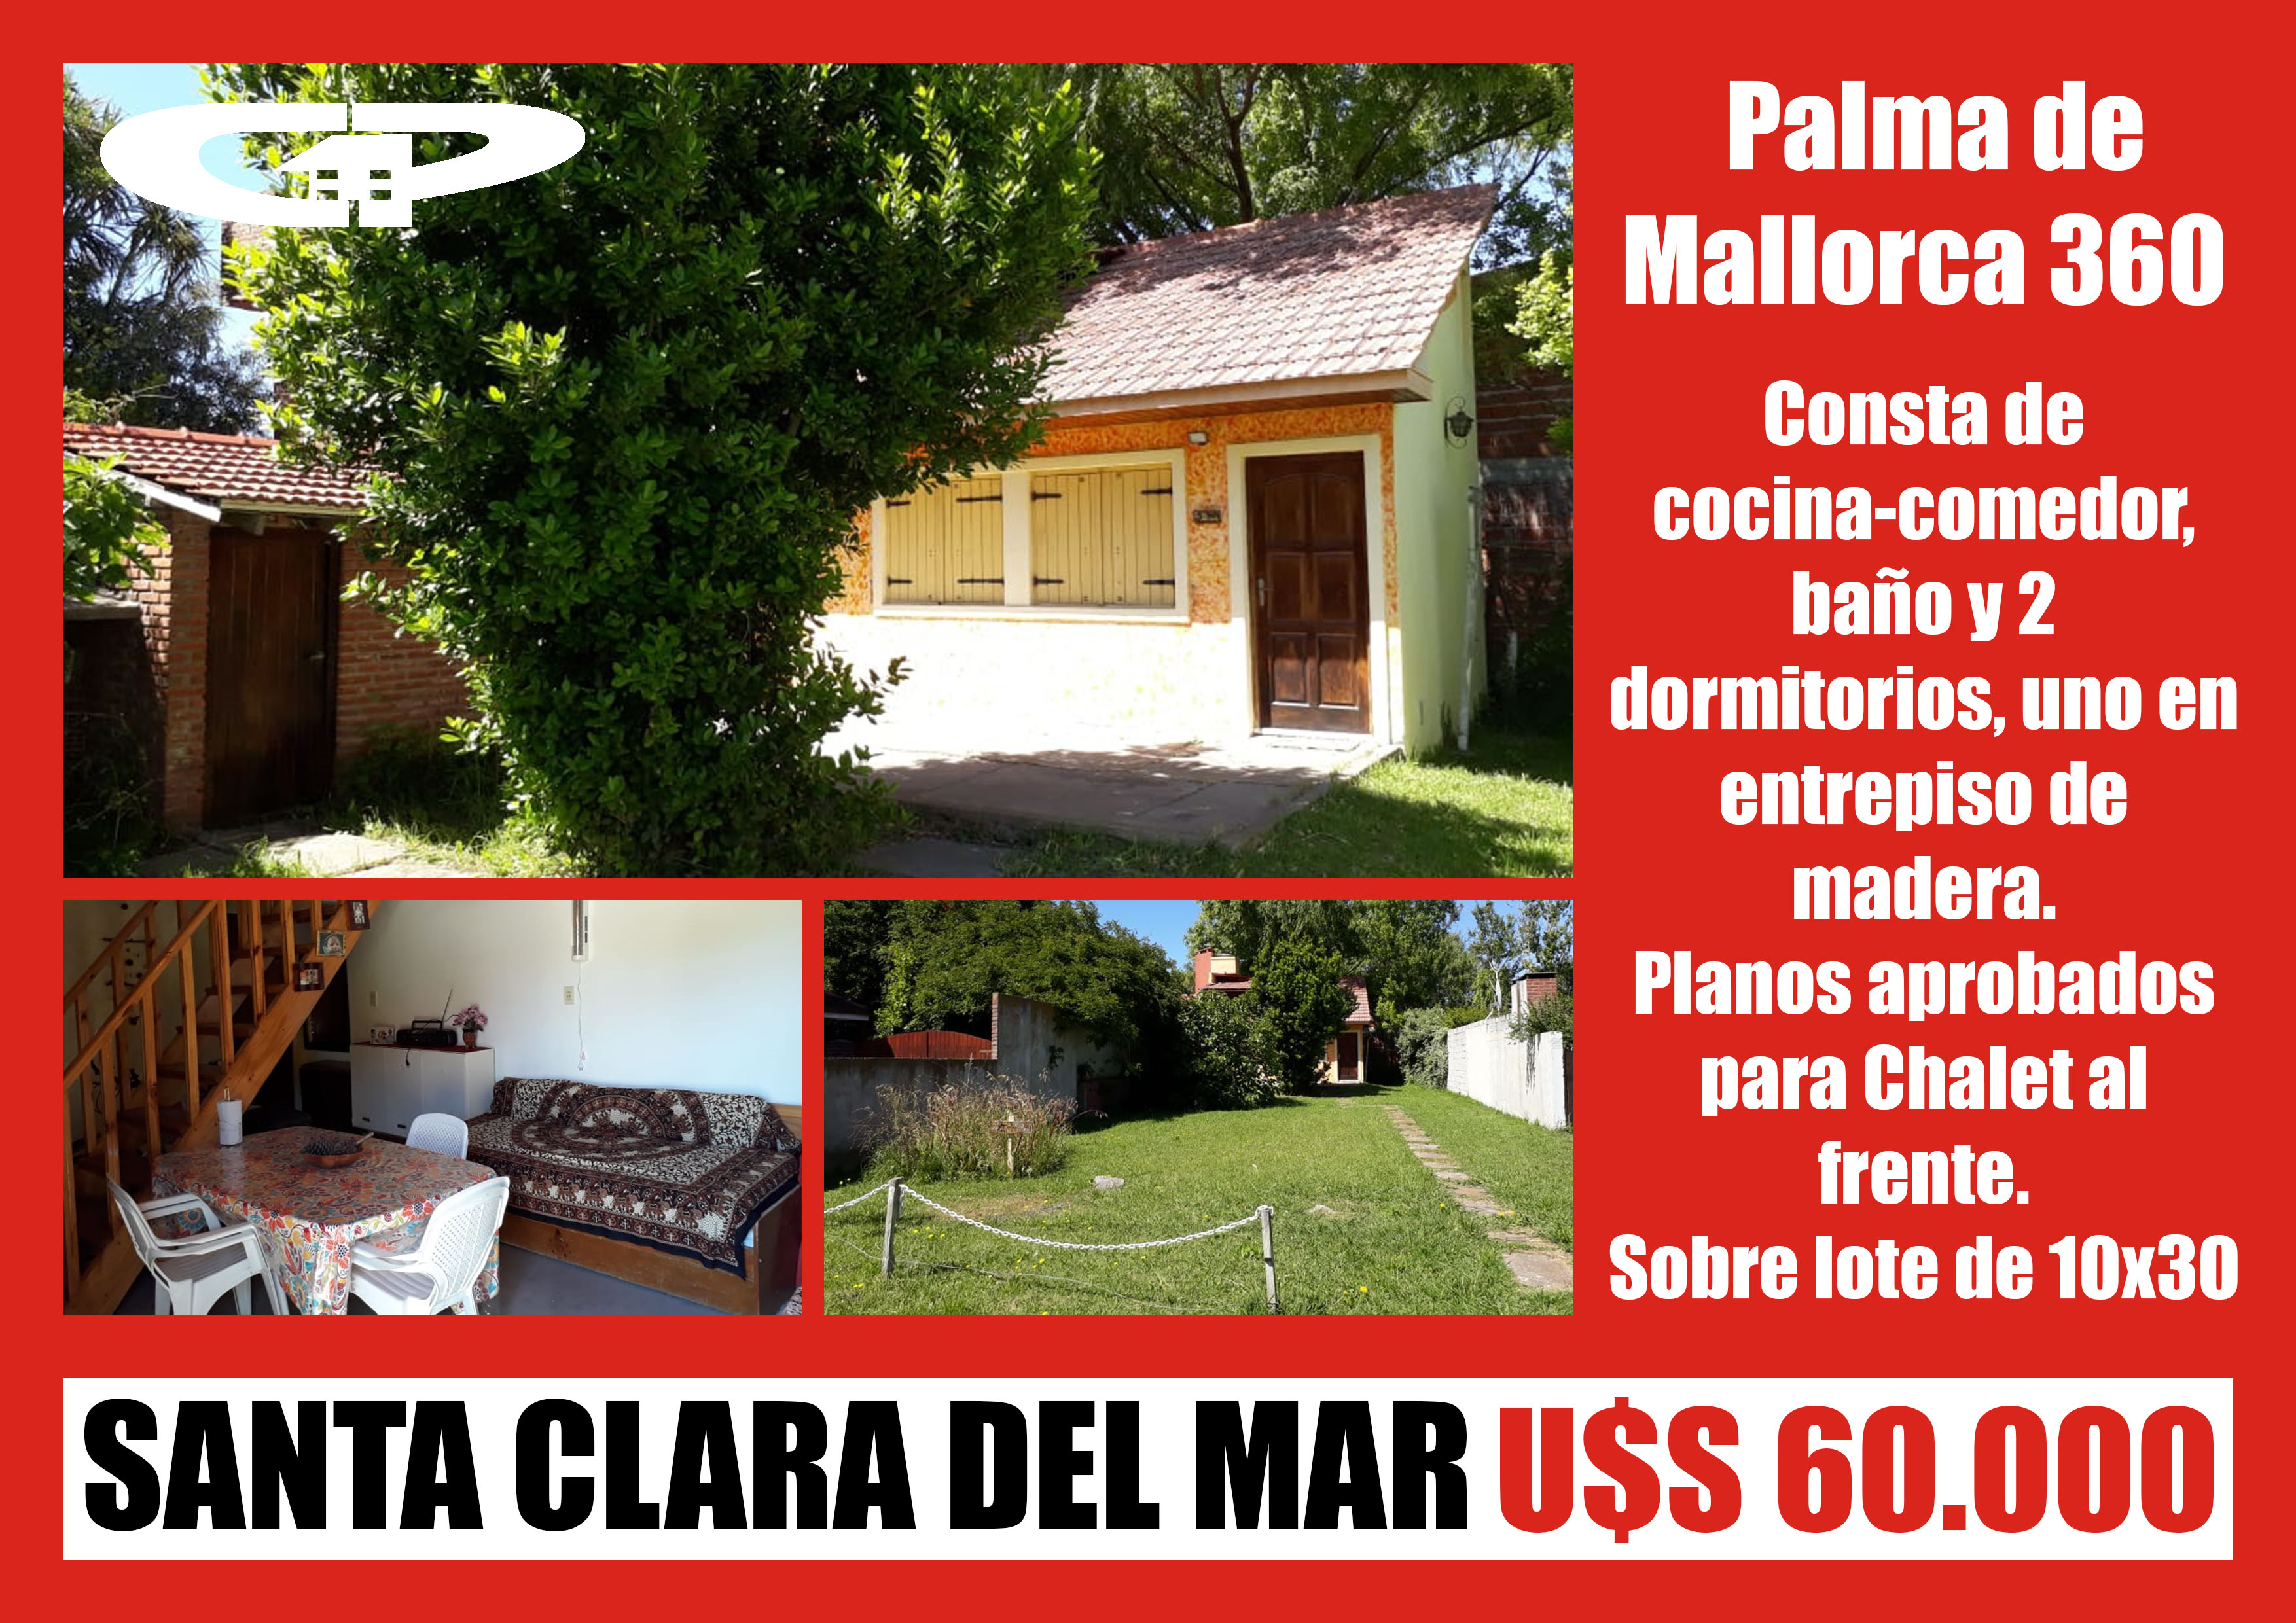 Palma de Mallorca 360